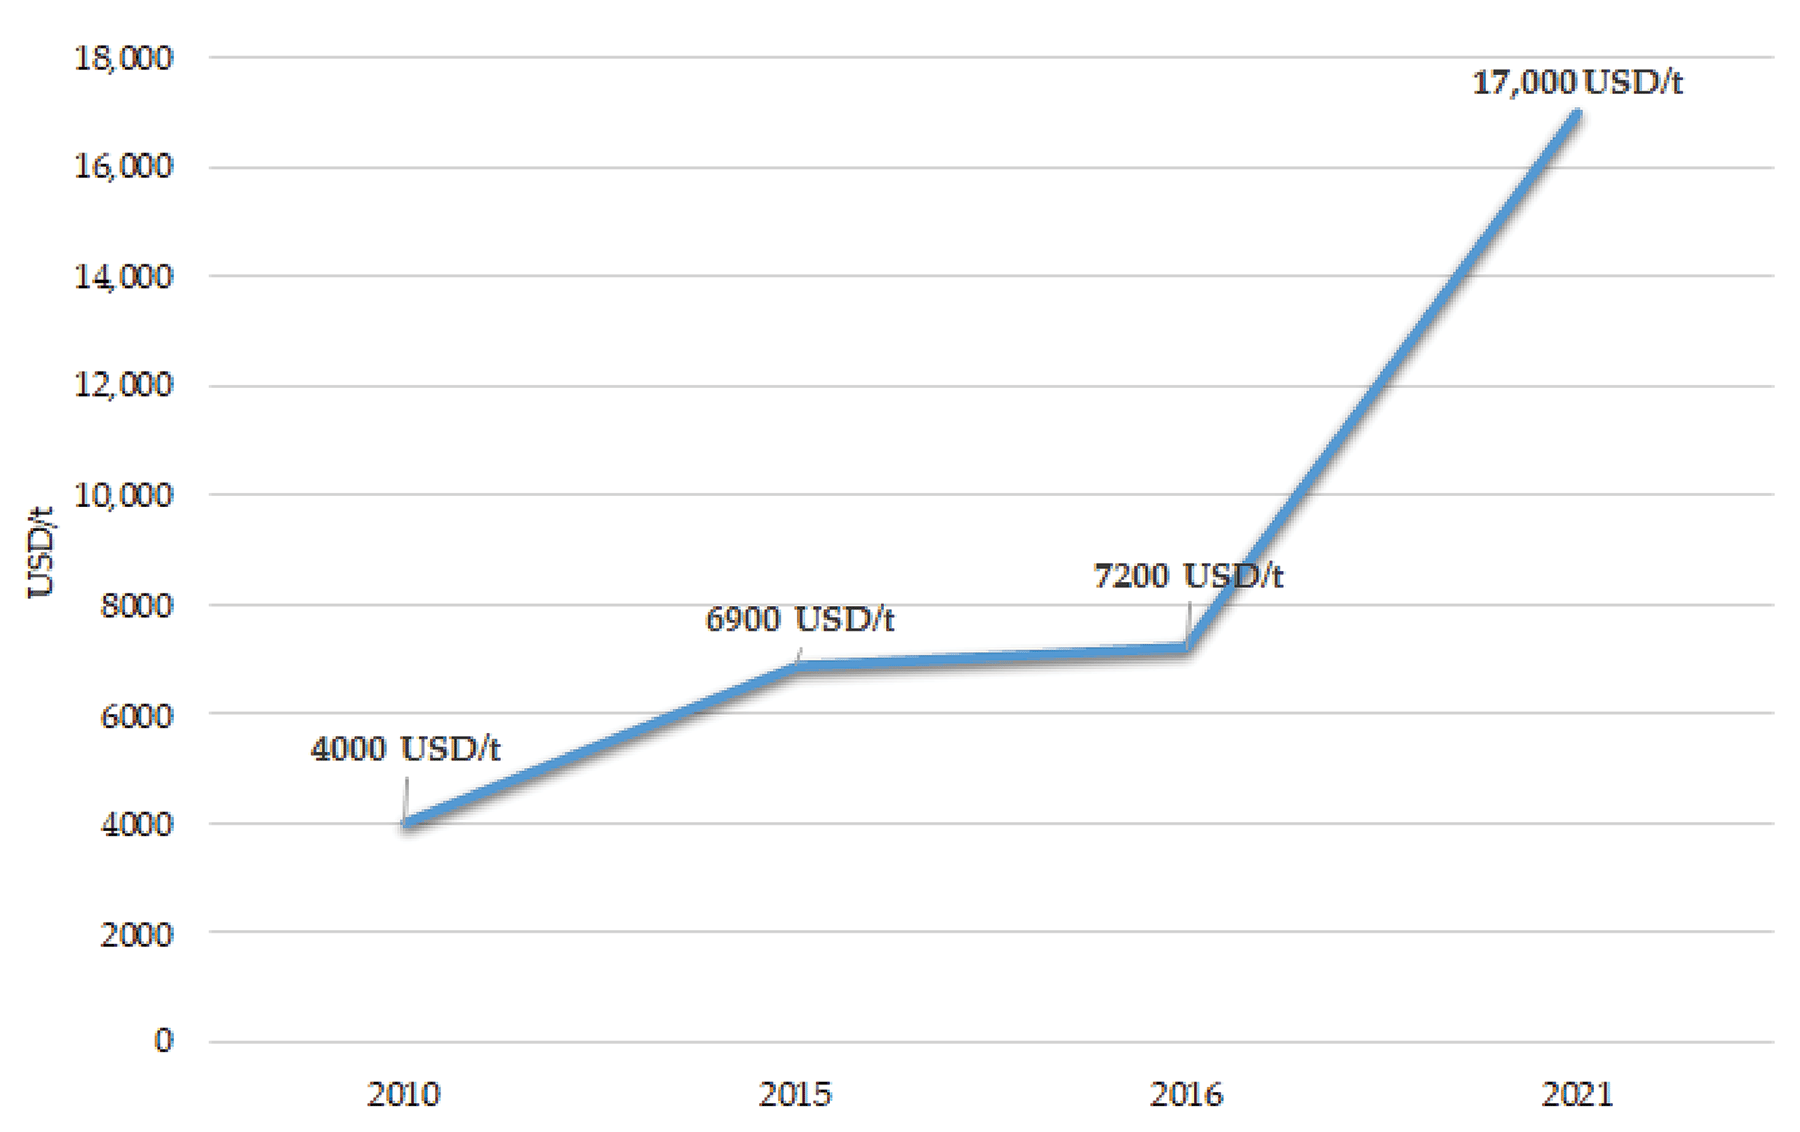 Lithium carbonate price per ton (2010 to 2021)